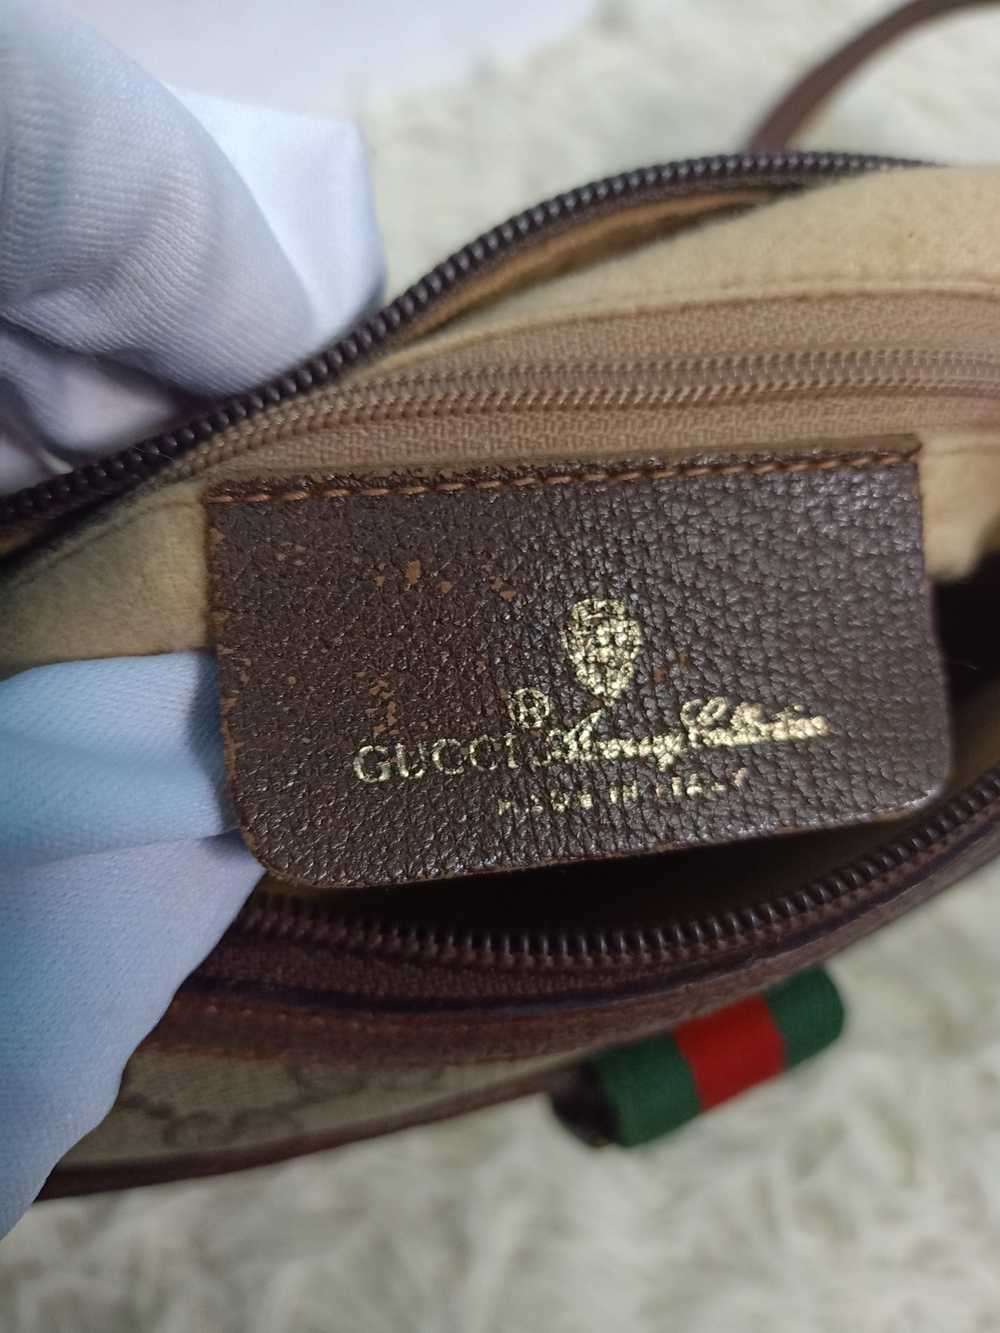 Authentic × Gucci Authentic Vintage Gucci Bag wit… - image 1